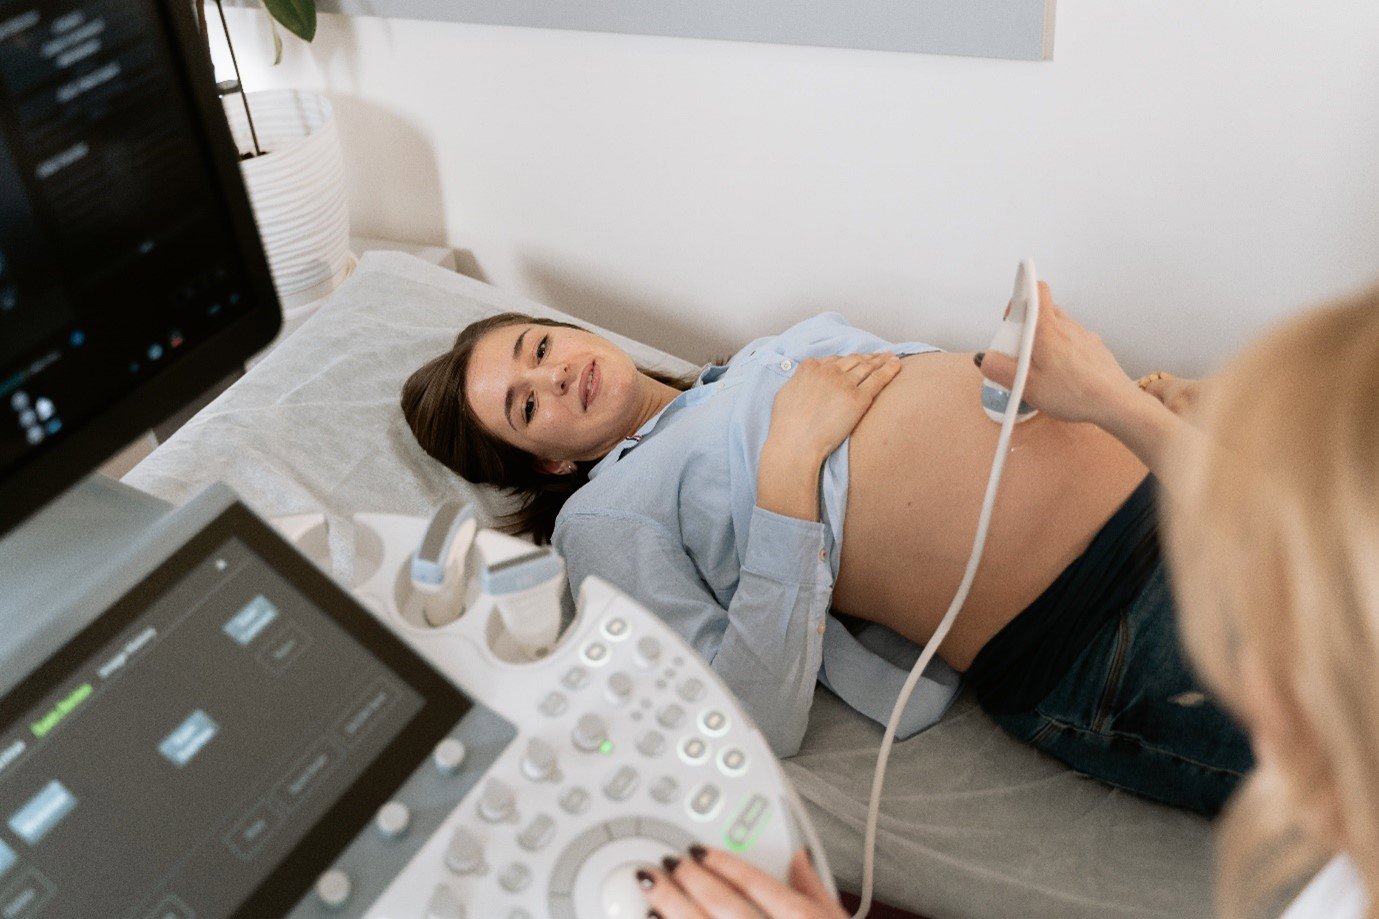 a woman receiving an ultrasound scan